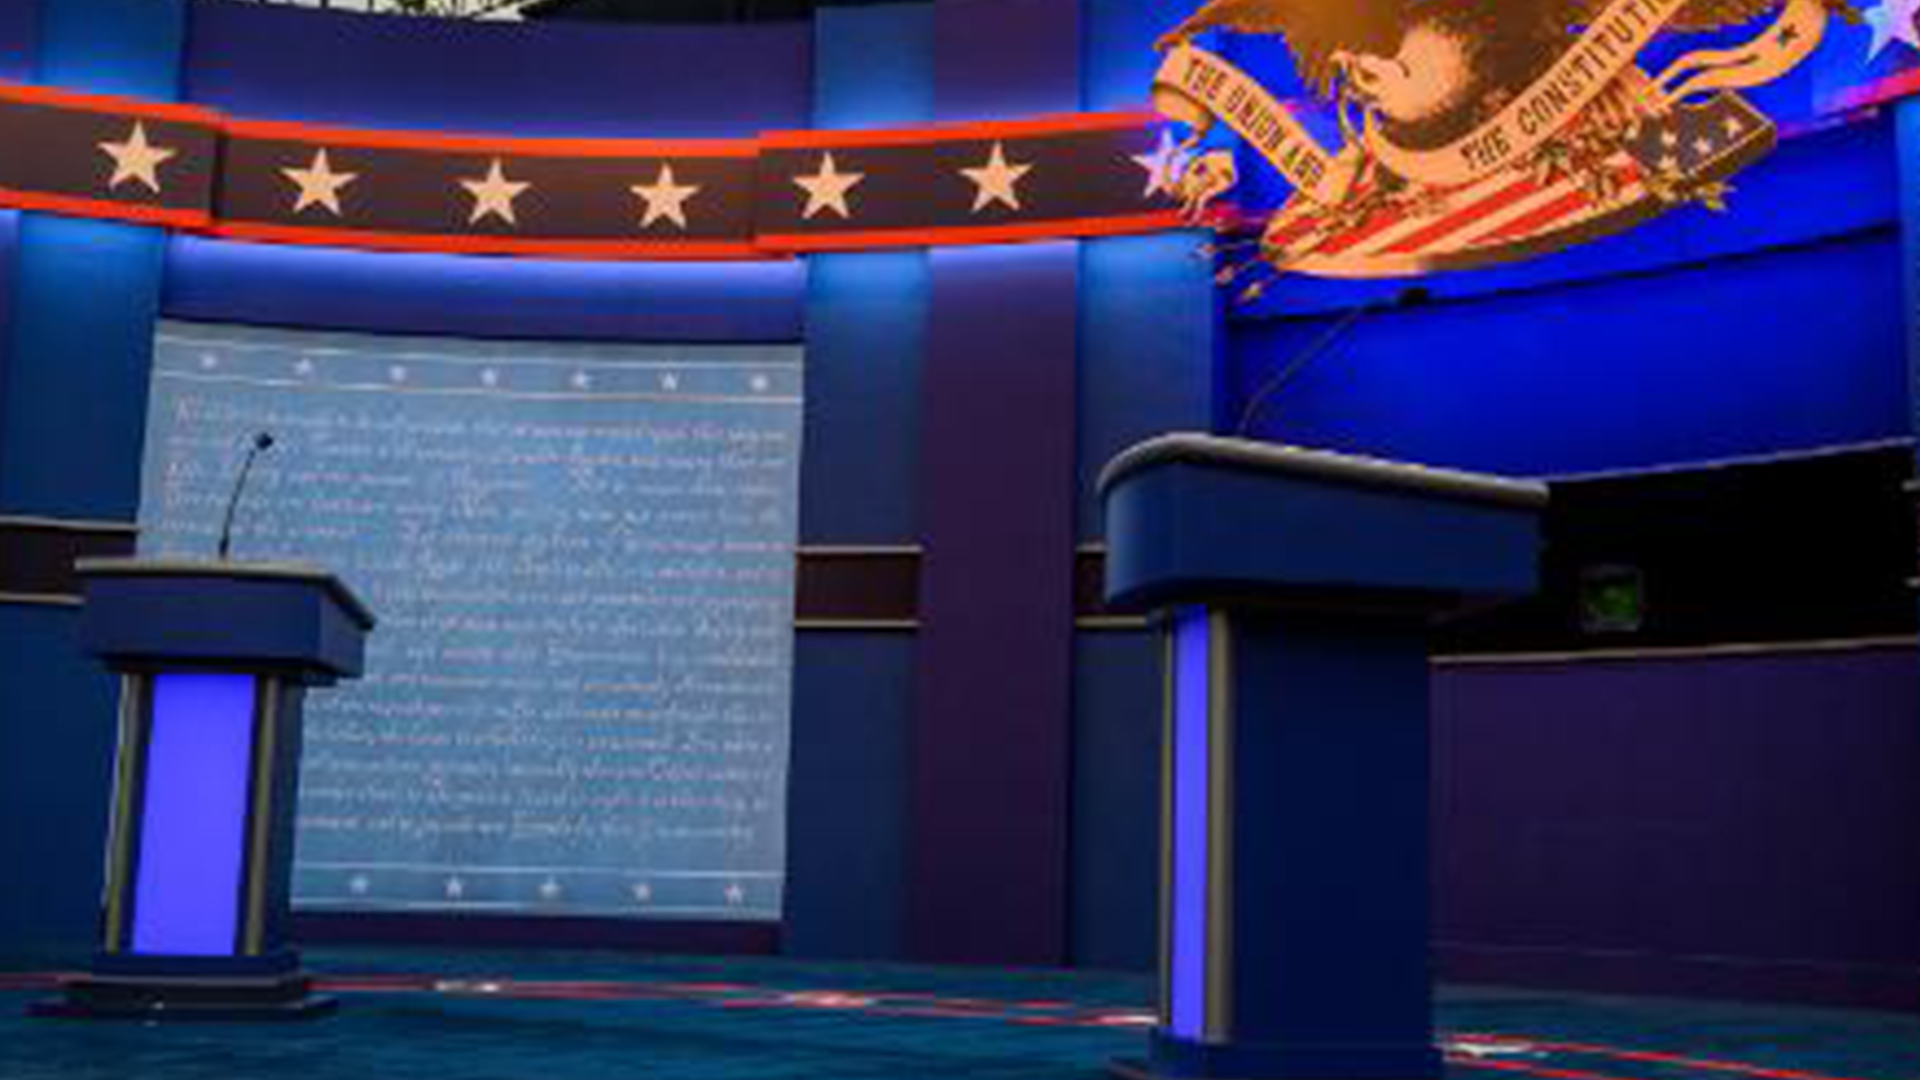 History of US presidential debates